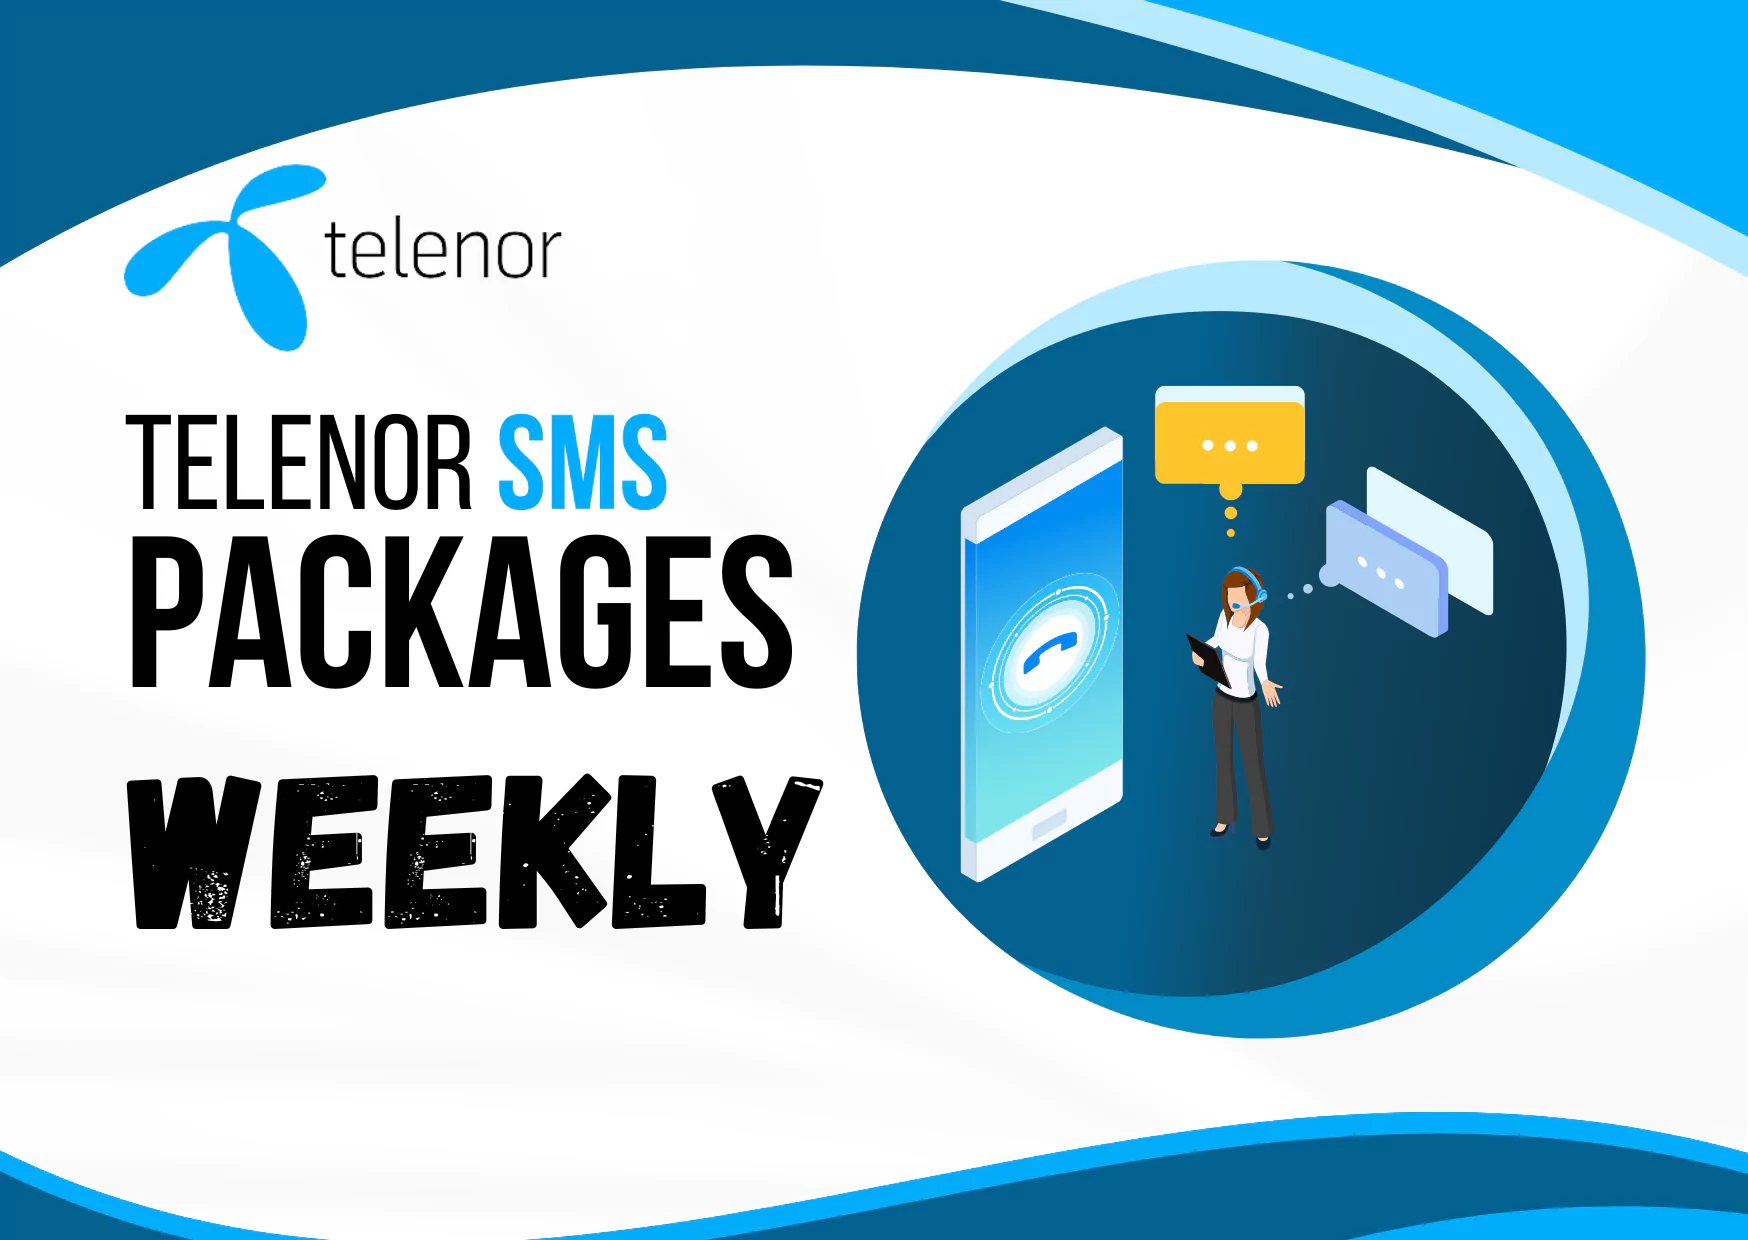 telenor sms package weekly code